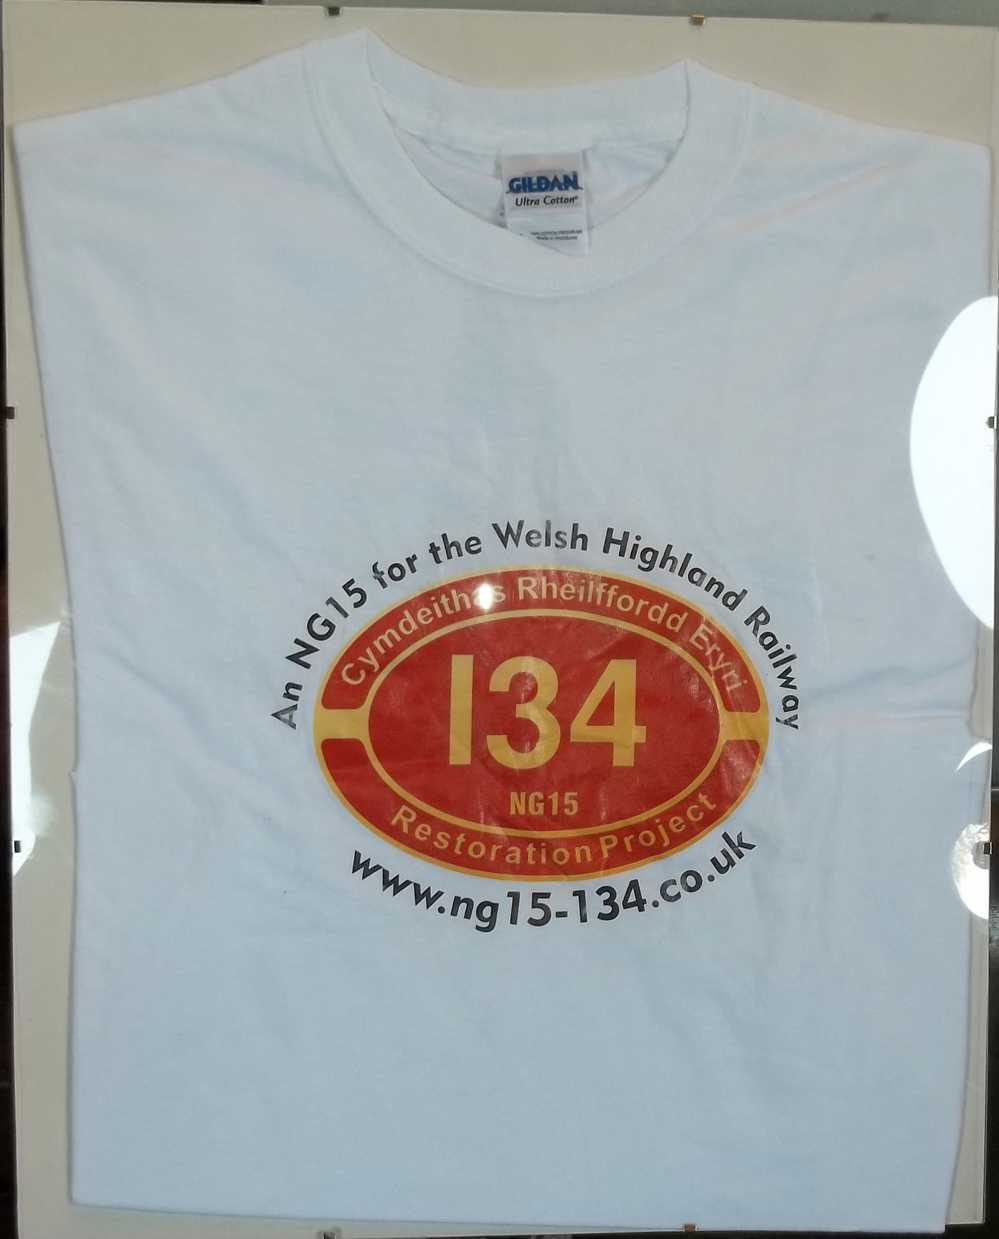 NG15 restoration T-shirt